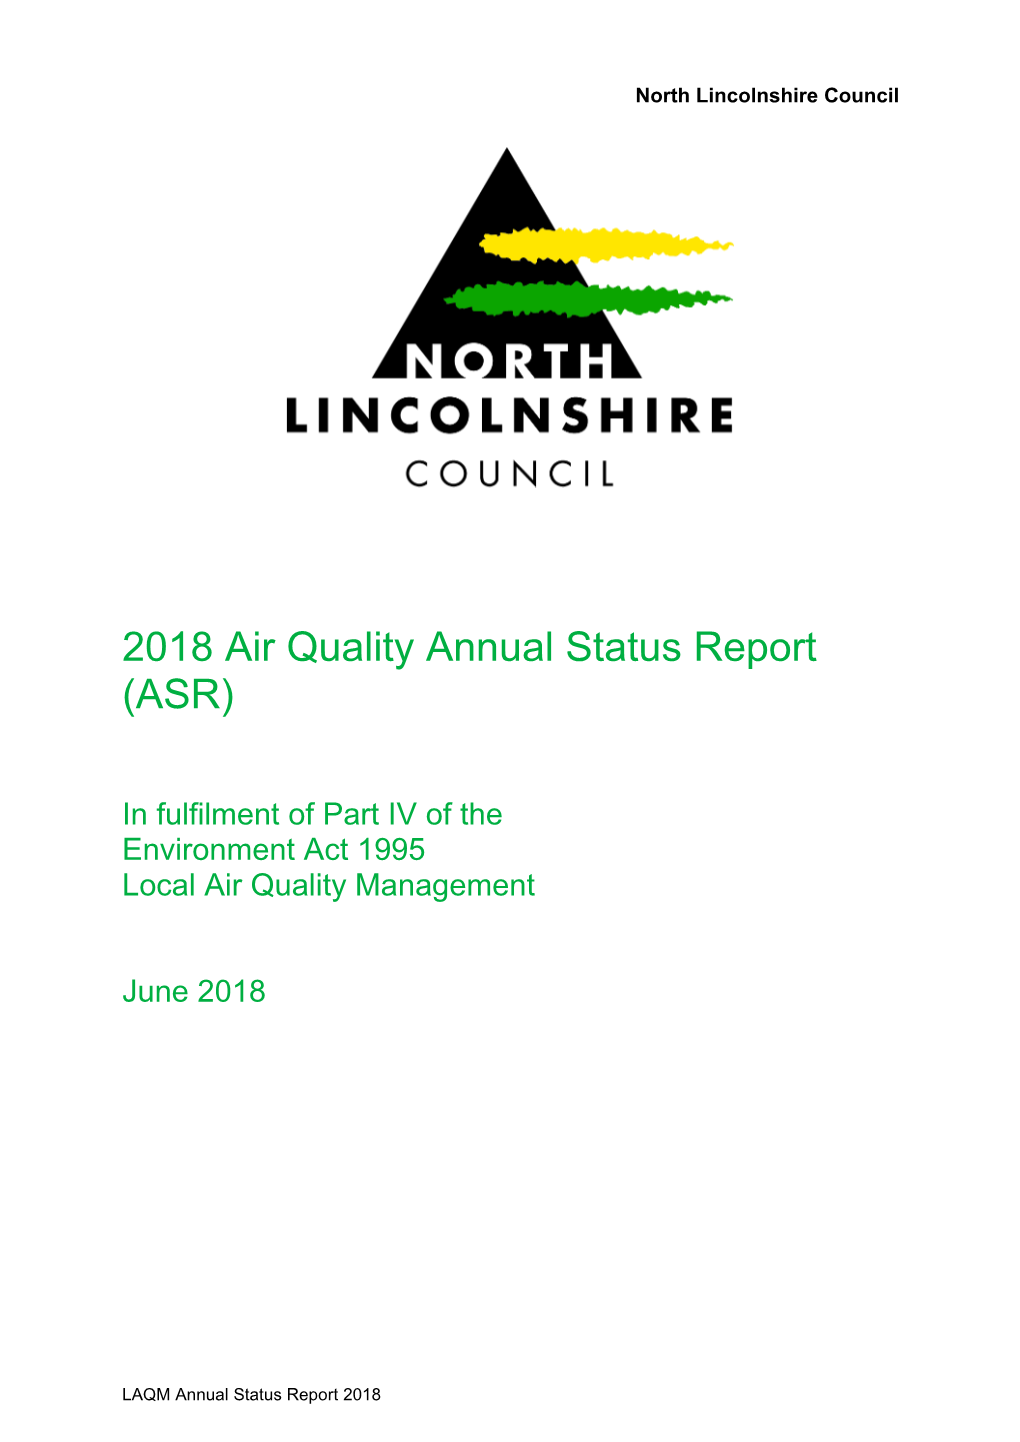 Annual Status Report 2018 North Lincolnshire Council